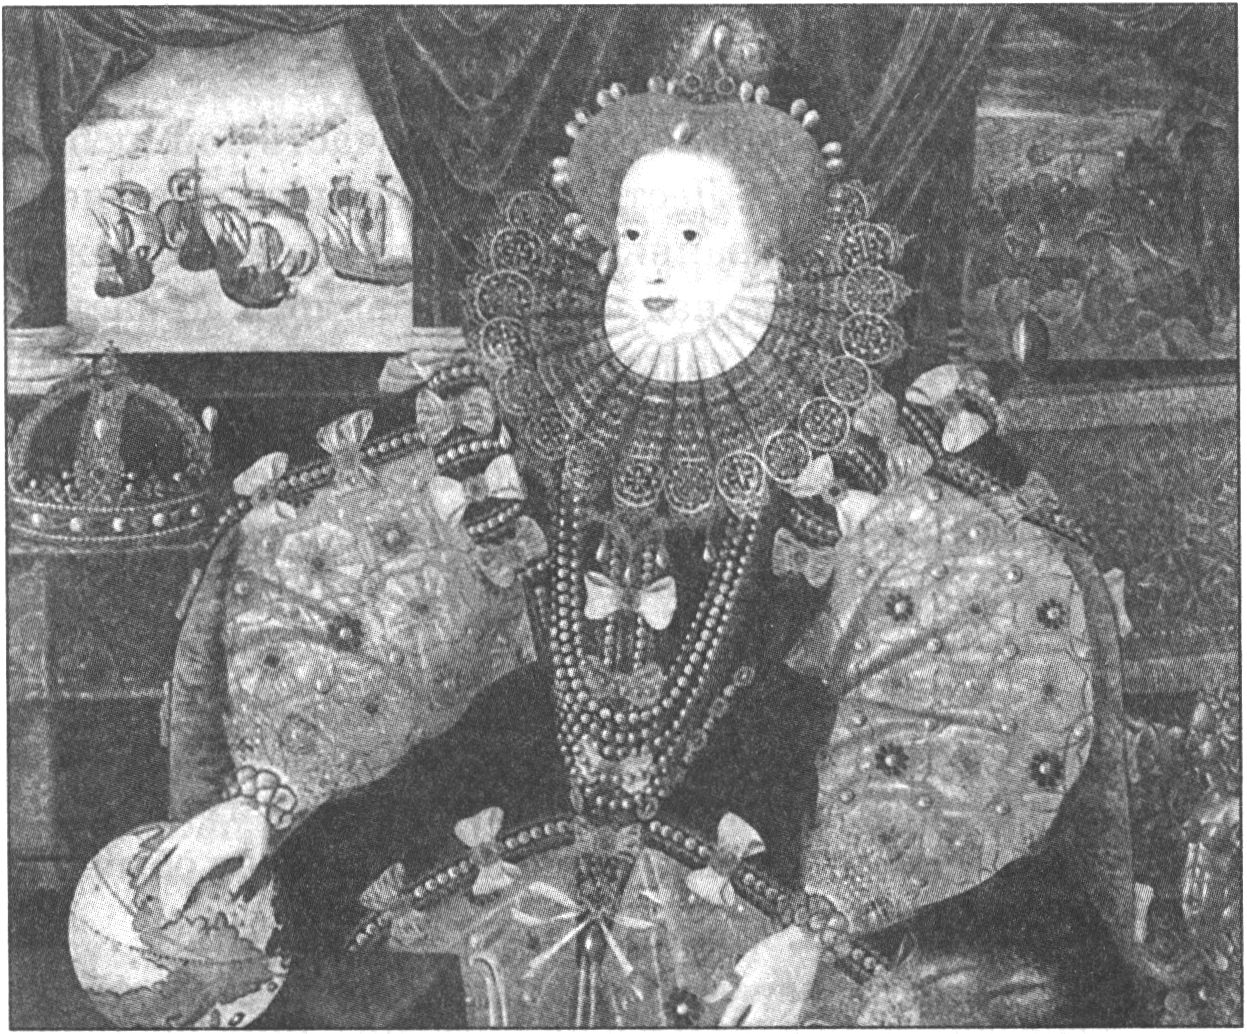 Королева Елизавета, около 1588 года. Этот портрет времени разгрома Непобедимой Армады, ставшего одним из поворотных моментов английской истории. На картине справа от королевы изображена буря, которая разбросала и уничтожила корабли Армады. Это было воспринято как вмешательство Бога, чтобы не допустить восстановления католицизма в Англии, и как знак одобрения протестантизма со стороны Всевышнего